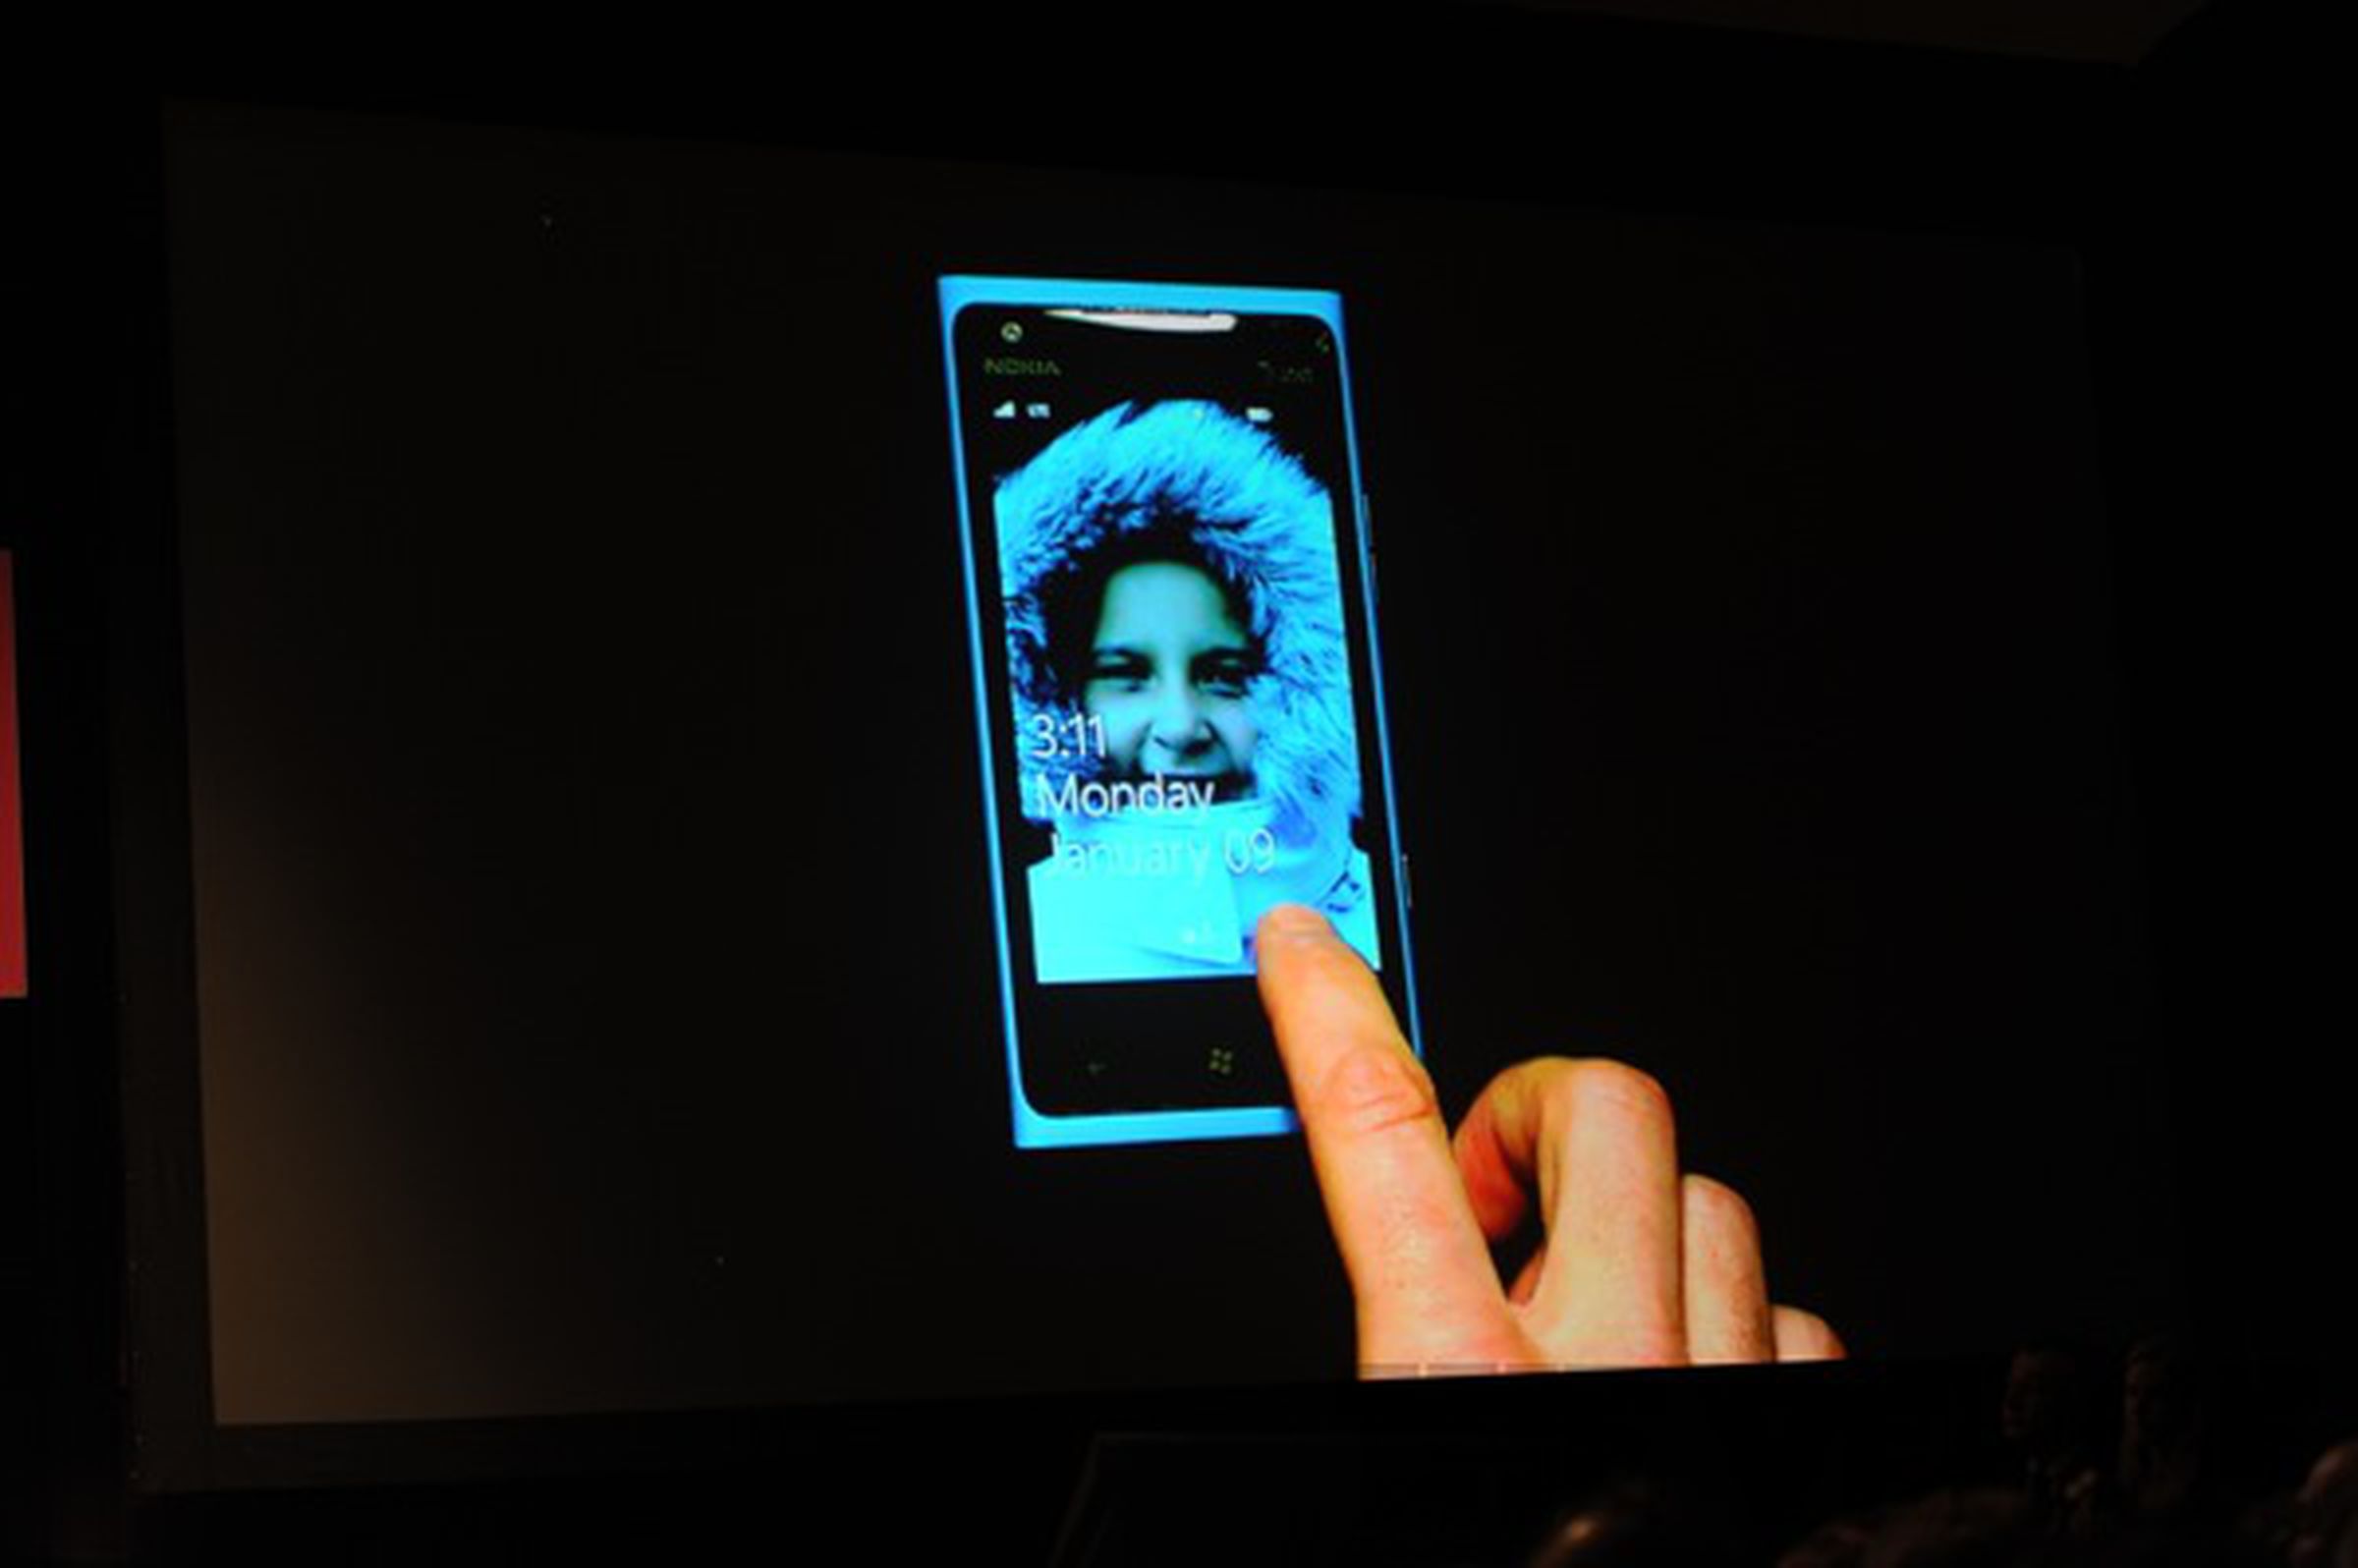 Nokia Lumia 900 announcement images